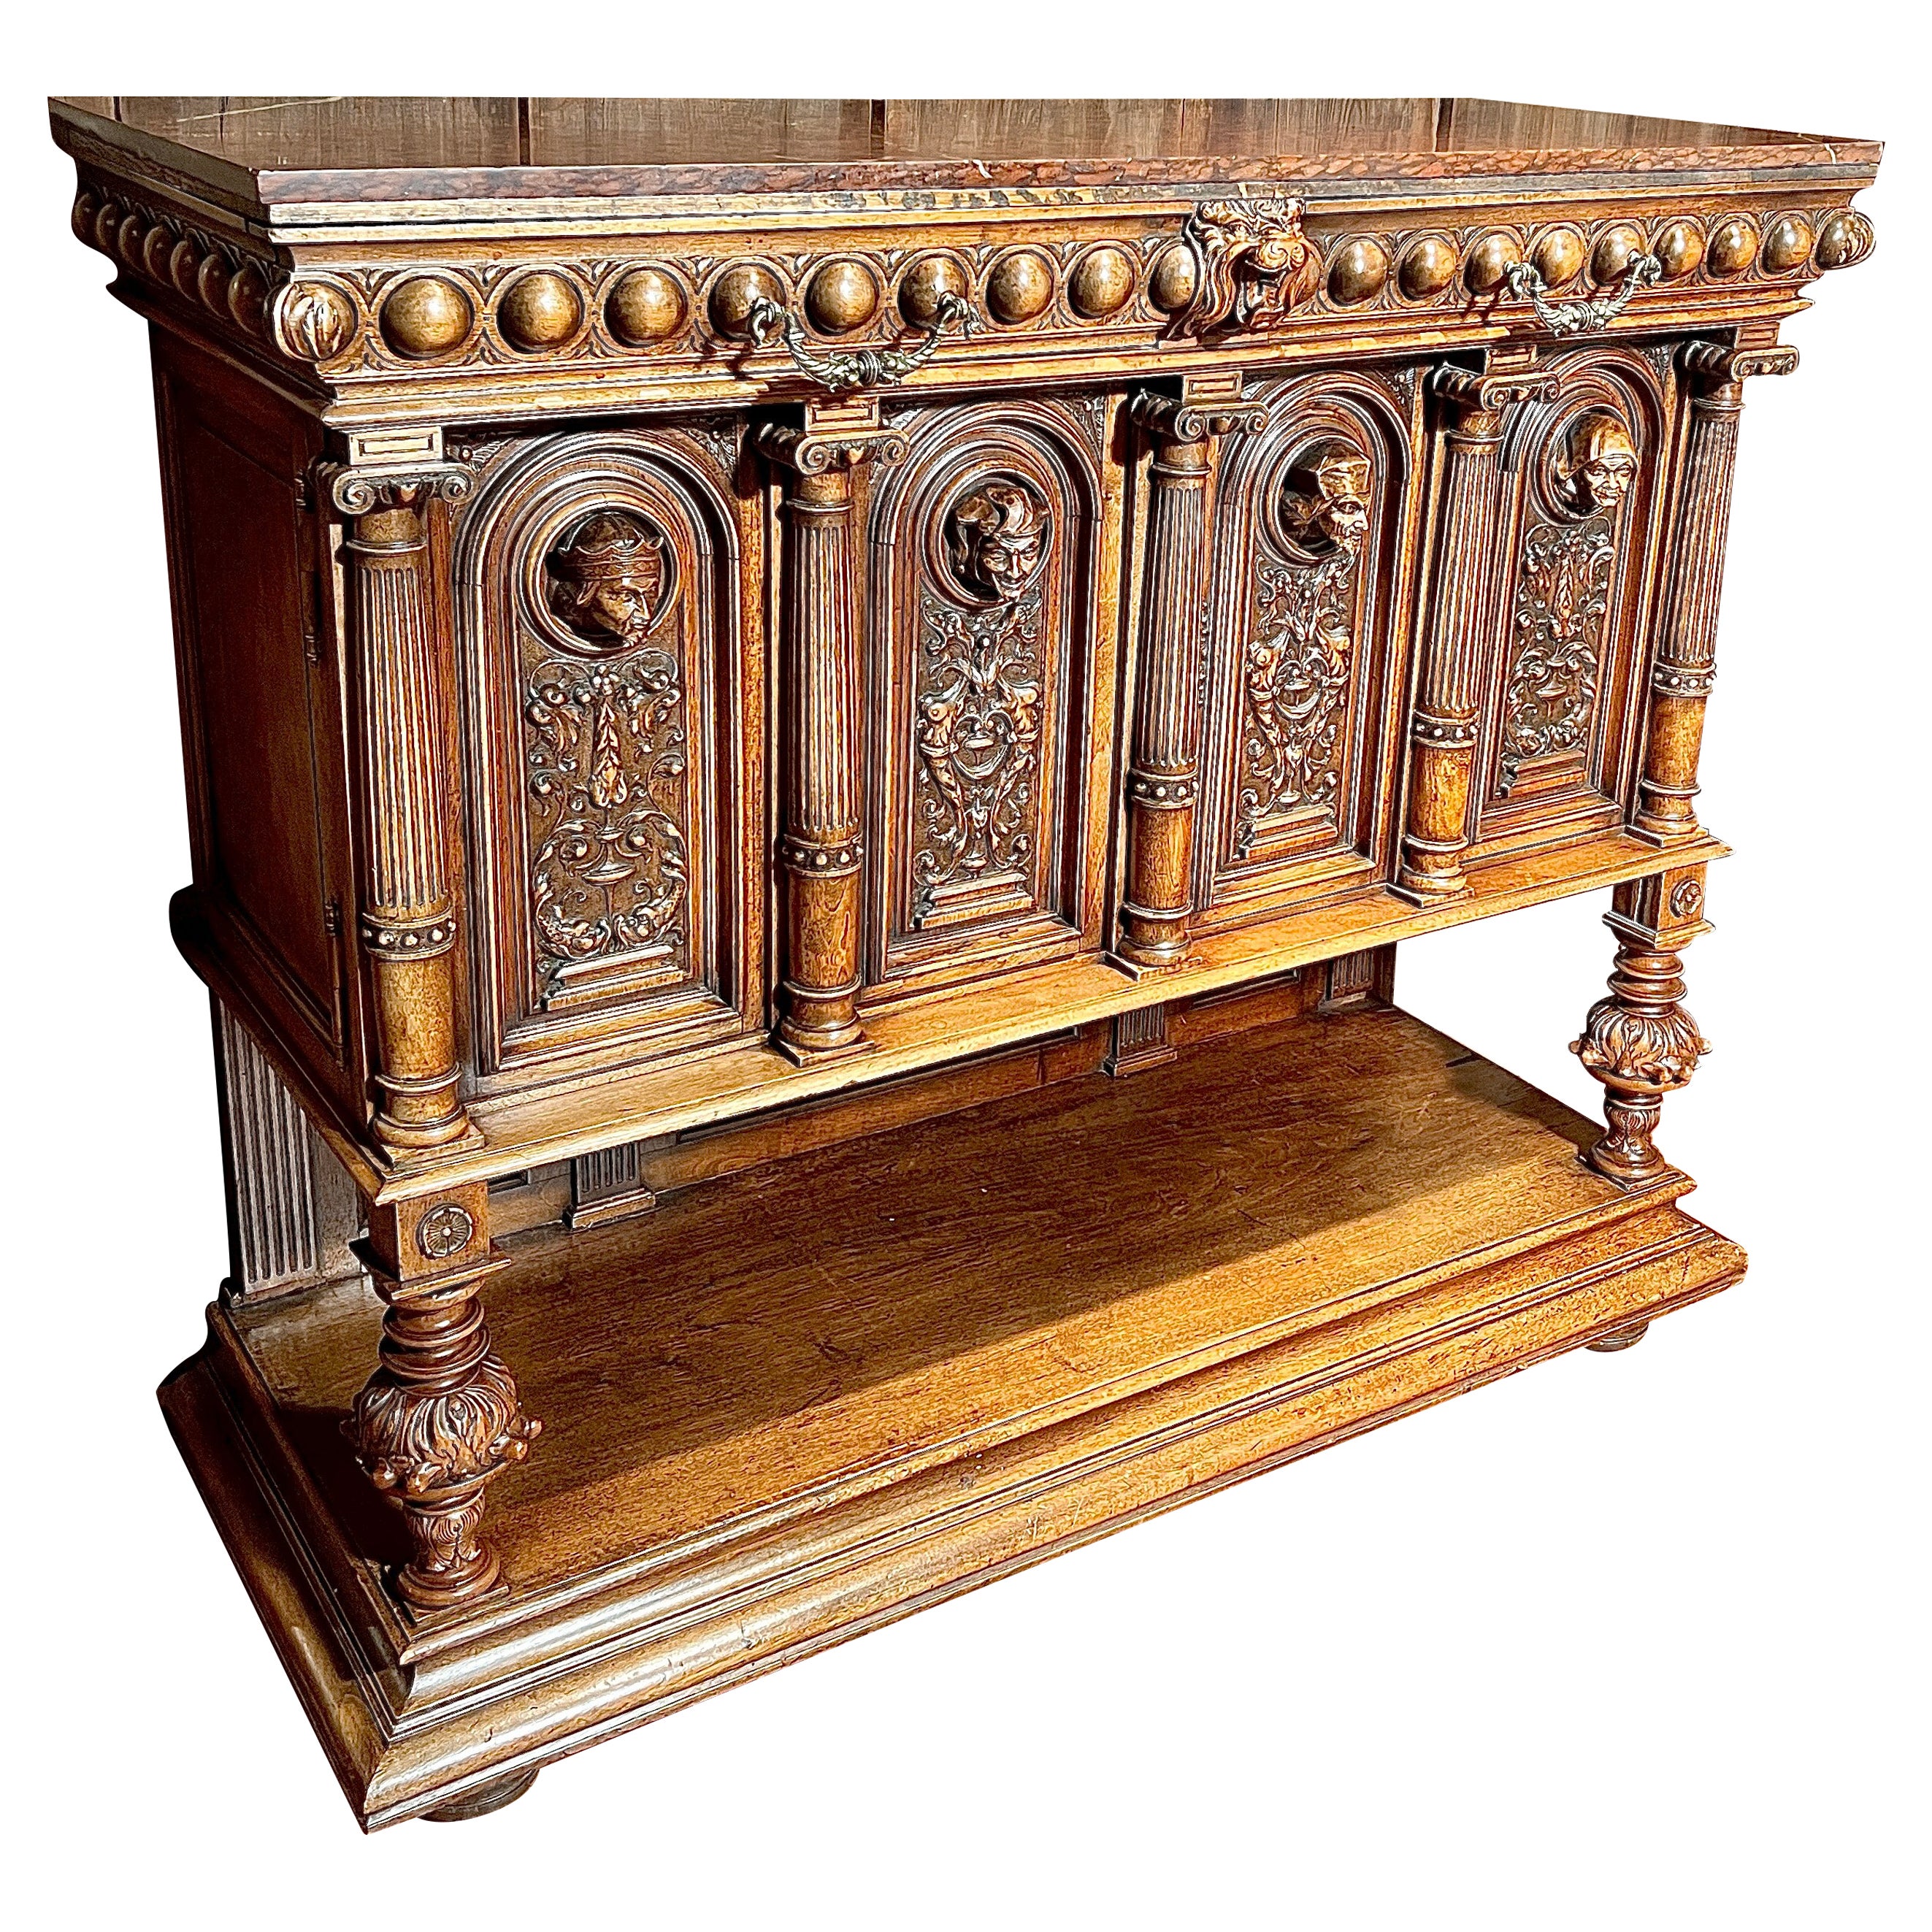 Antique French Francois Premier Marble-Top Walnut Cabinet, "Renaissance" Carving